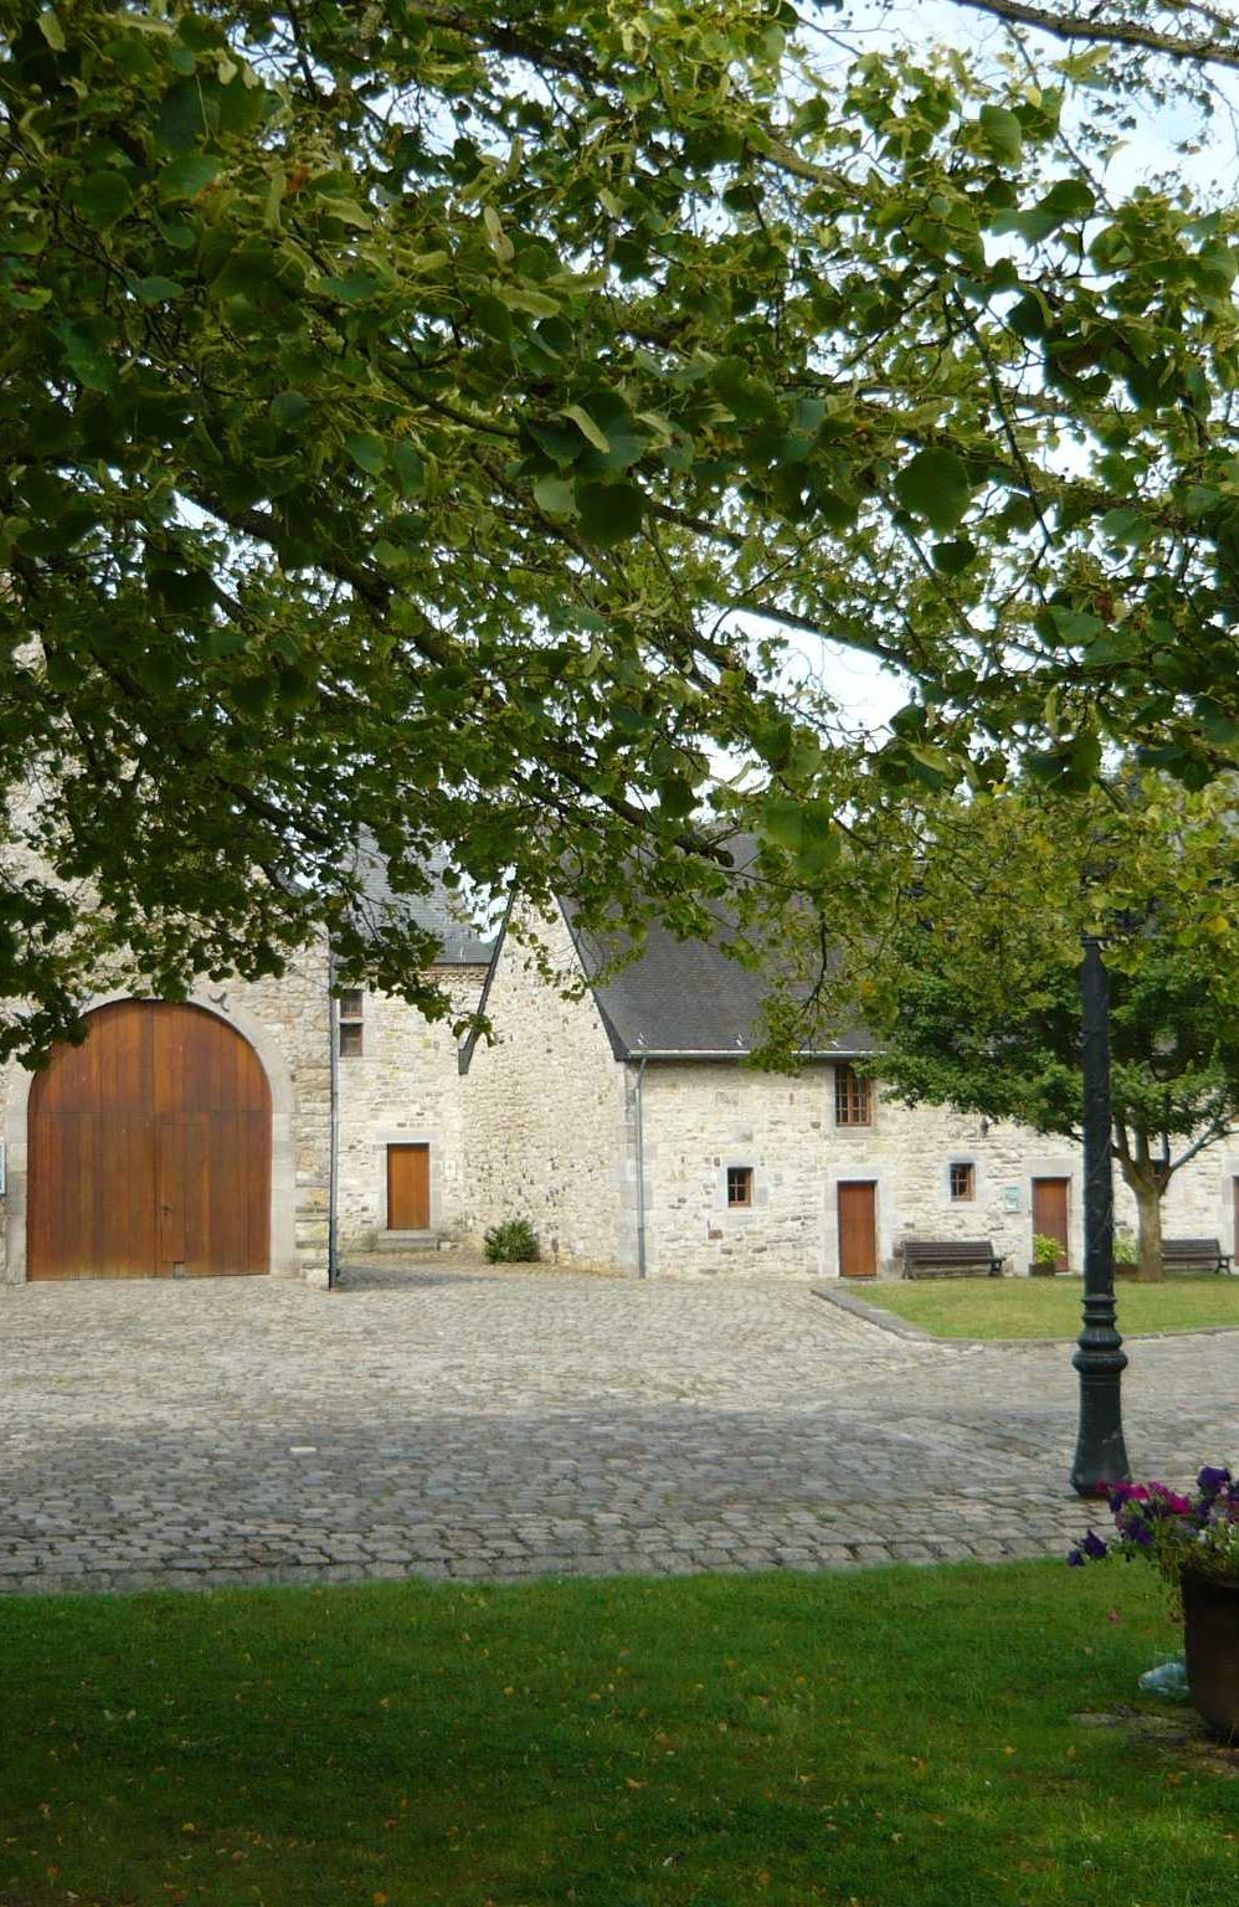 La vieille ferme de Godinne qui abrite le musée archéologique